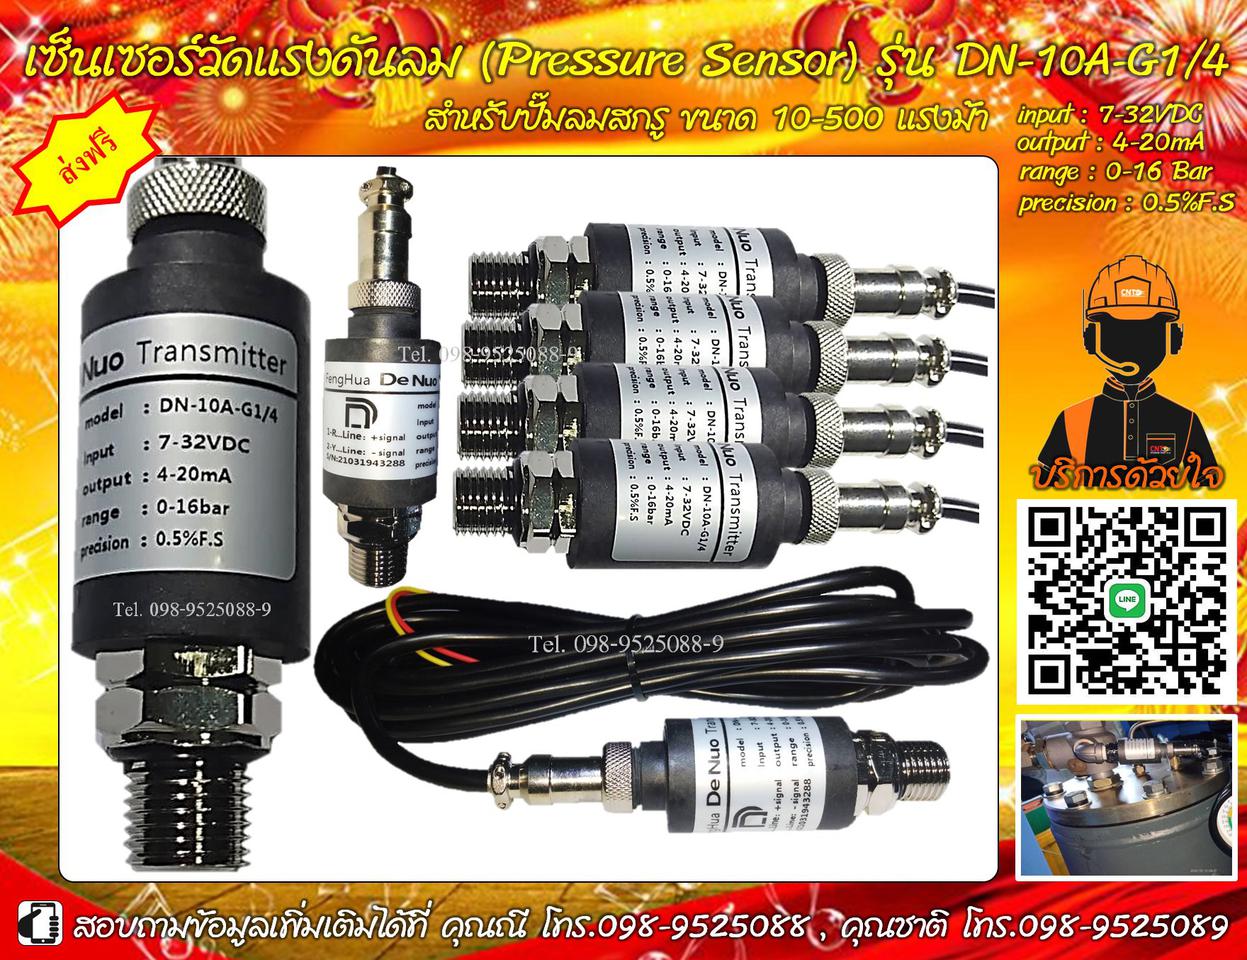 เซ็นเซอร์วัดแรงดันลม (Pressure Sensor / Pressure Transmitter) รุ่น DN-10A-G1/4 สำหรับปั๊มลมสกรู ขนาด 10-500 แรงม้า 